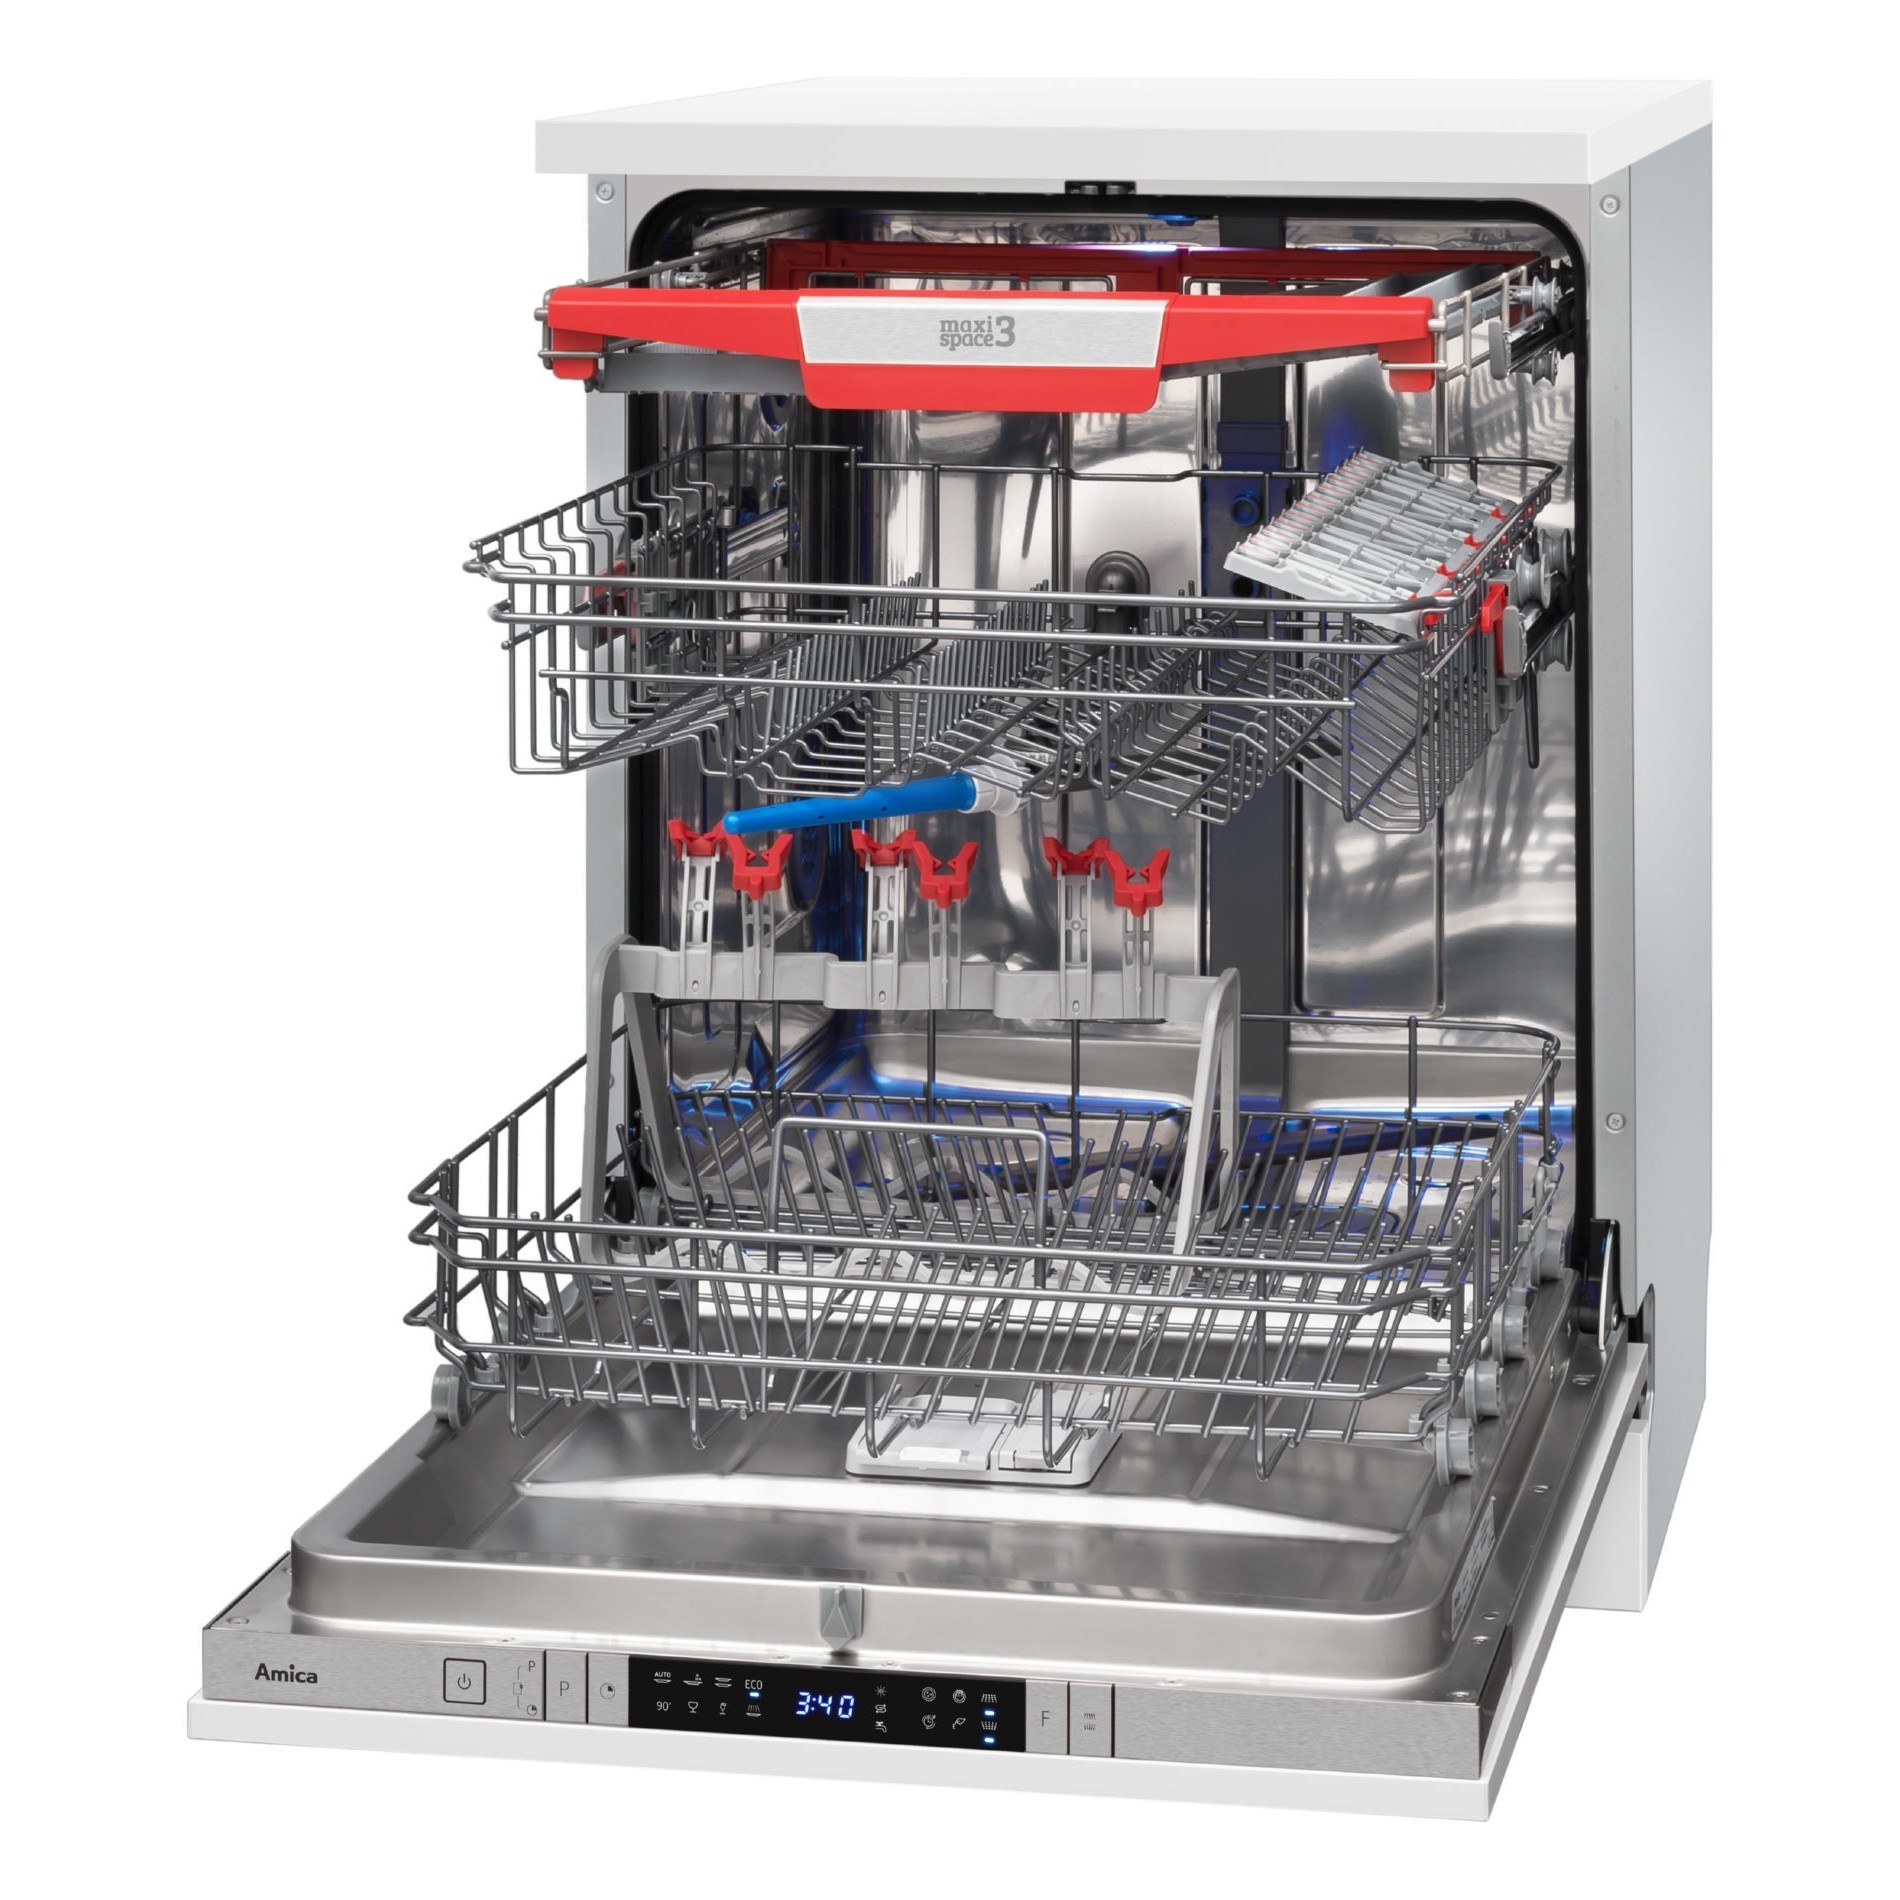 Днс купить посудомоечную встраиваемую. Посудомоечная машина Beko компактная ДНС. ДНС посудомоечная машина встраиваемая 60. Встраиваемая посудомоечная машина ДНС. ДНС посудомоечная машина встраиваемая 45 см.